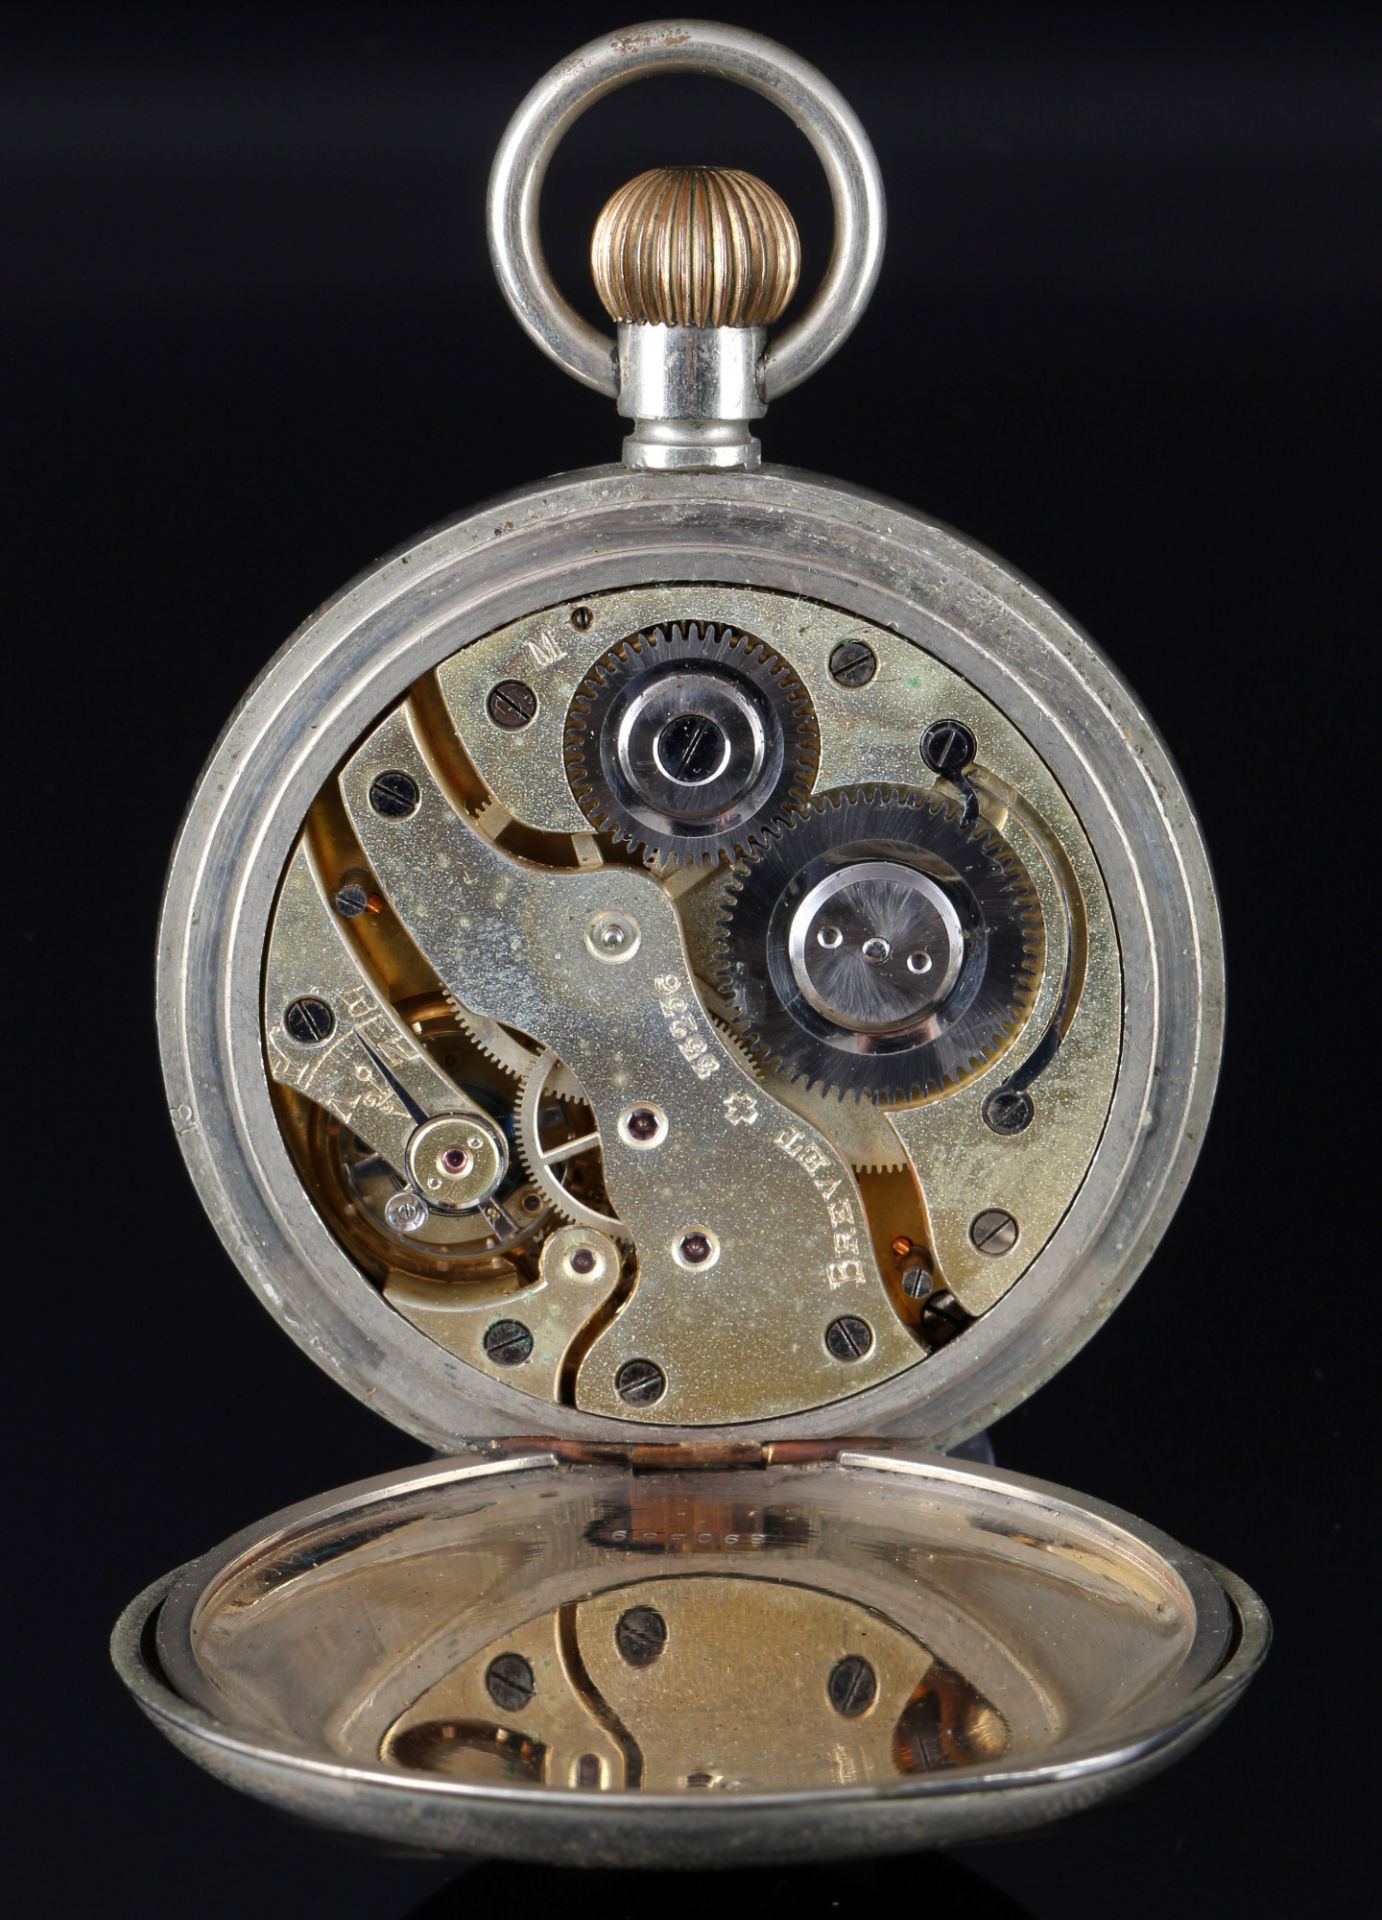 Brevet Taschenuhr als Reiseuhr in 925 Sterling Silbergehäuse um 1900, - Bild 6 aus 8